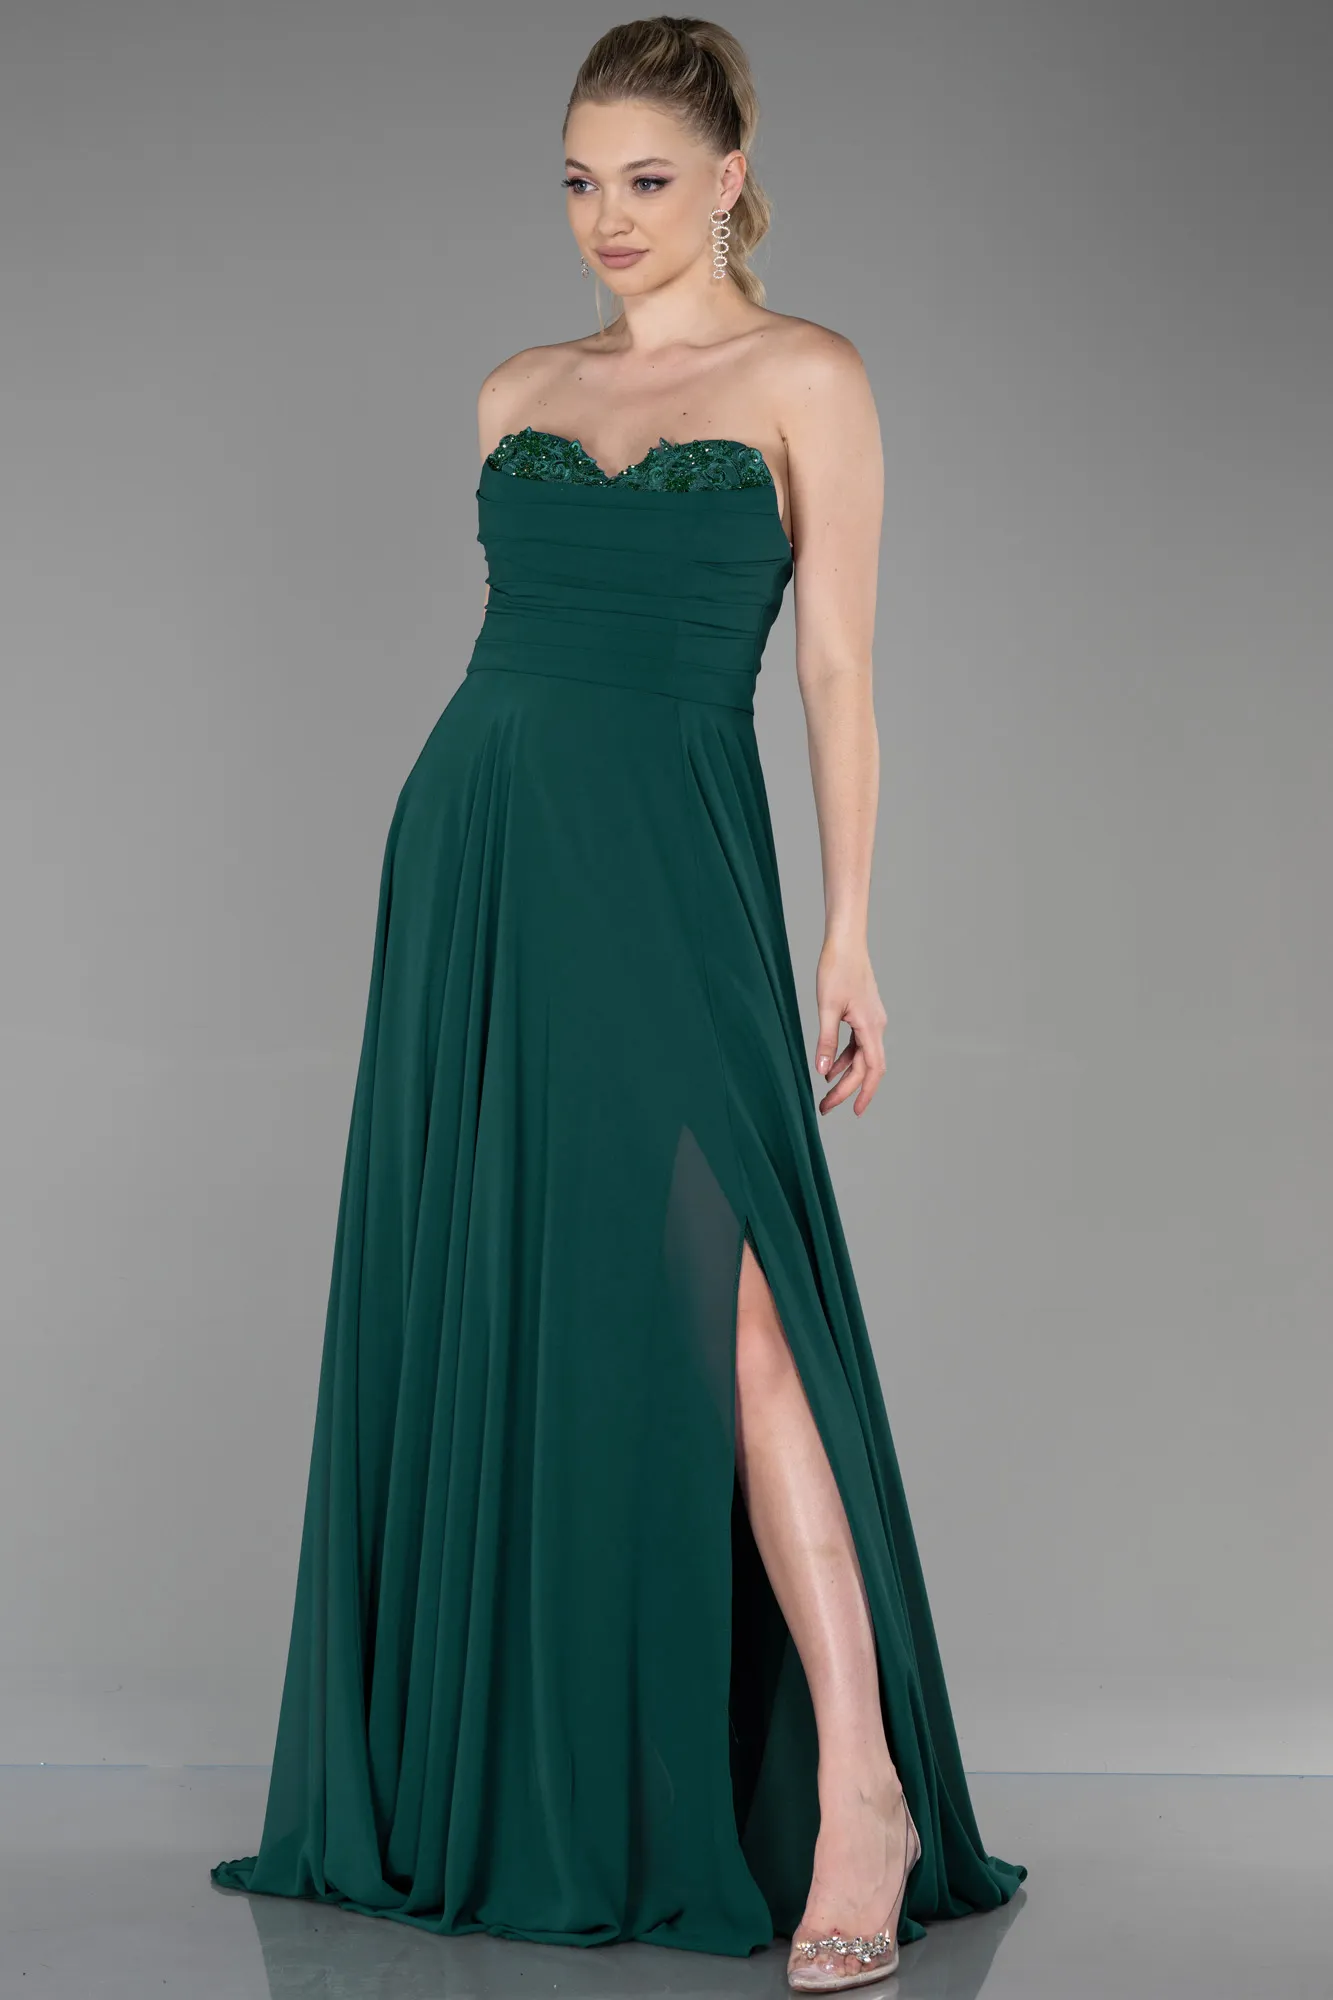 Emerald Green-Long Chiffon Evening Dress ABU3343